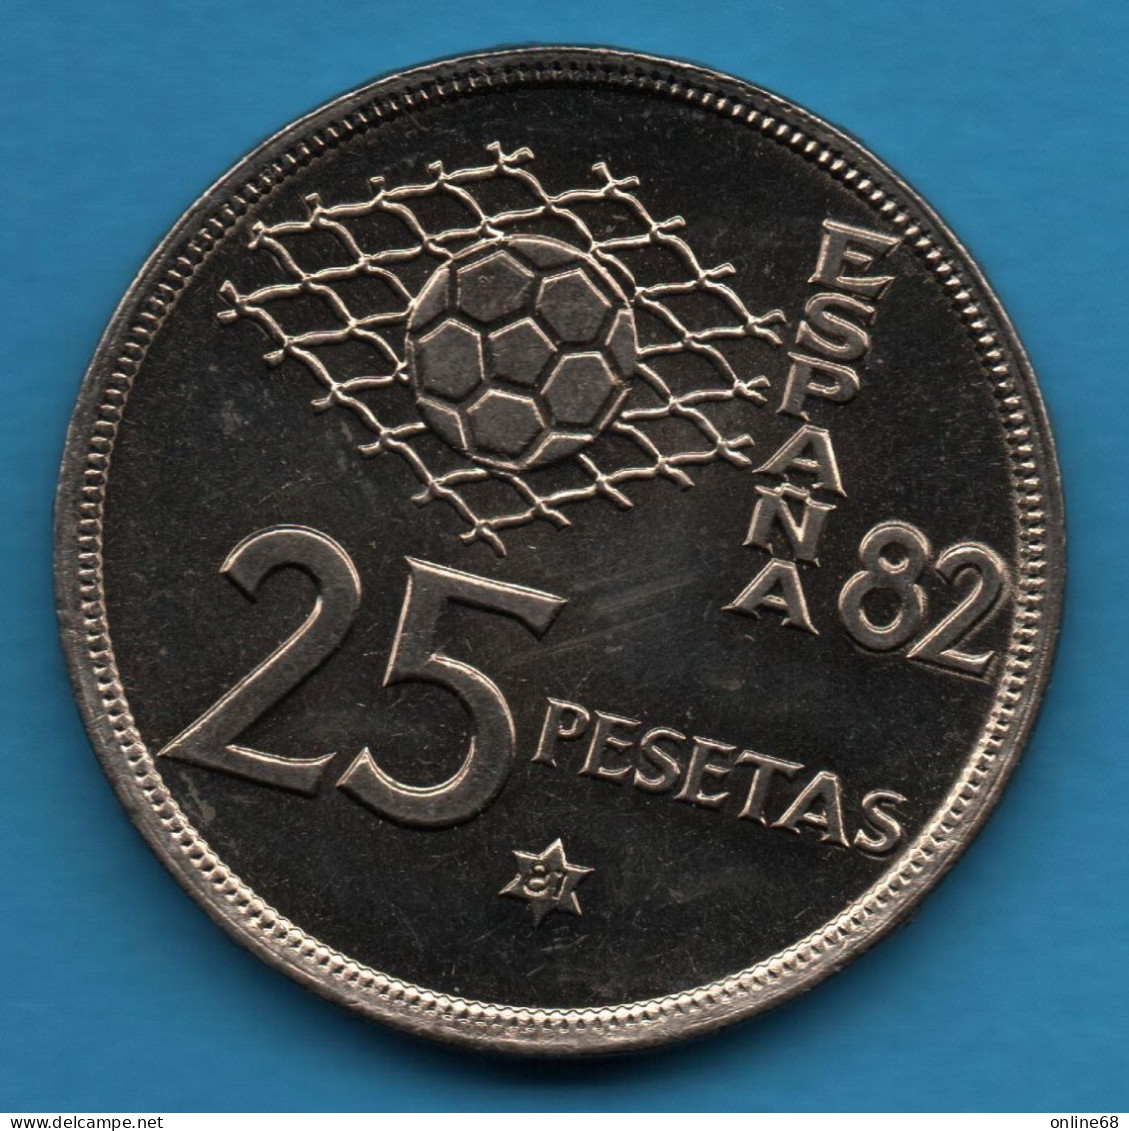 LOT MONNAIES 4 COINS : ESPANA - ESTONIA - FINLAND - Vrac - Monnaies